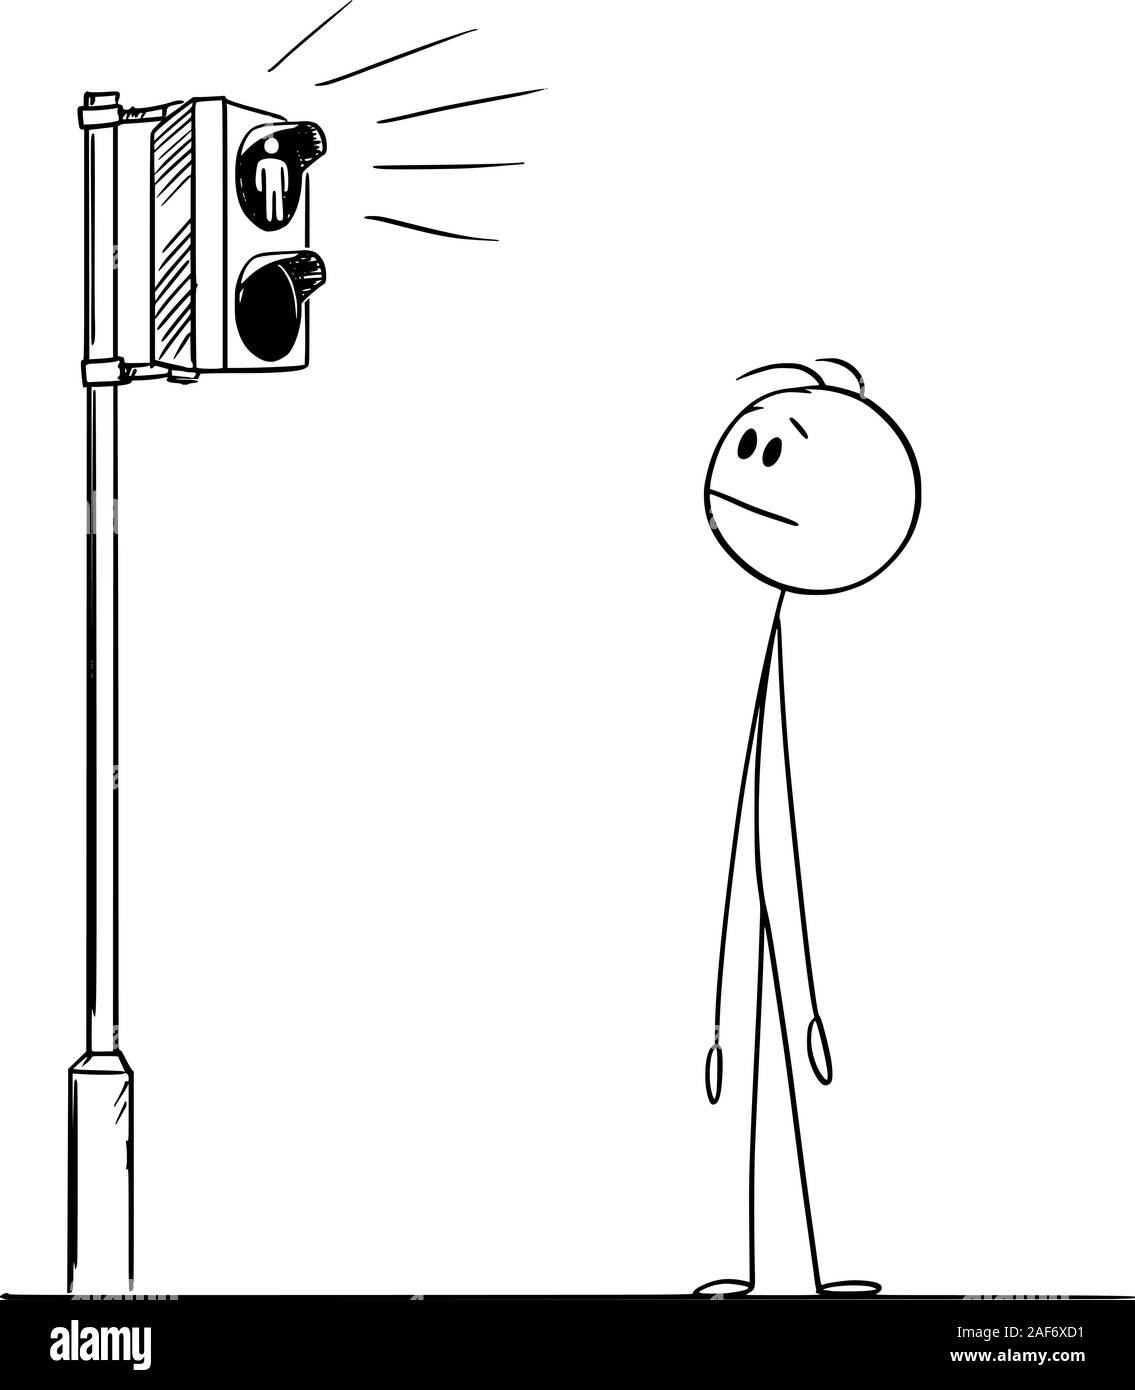 Vector cartoon stick figura disegno illustrazione concettuale dell'uomo o un pedone in attesa di luce verde sul traffico della strada luce sull' attraversamento. Illustrazione Vettoriale